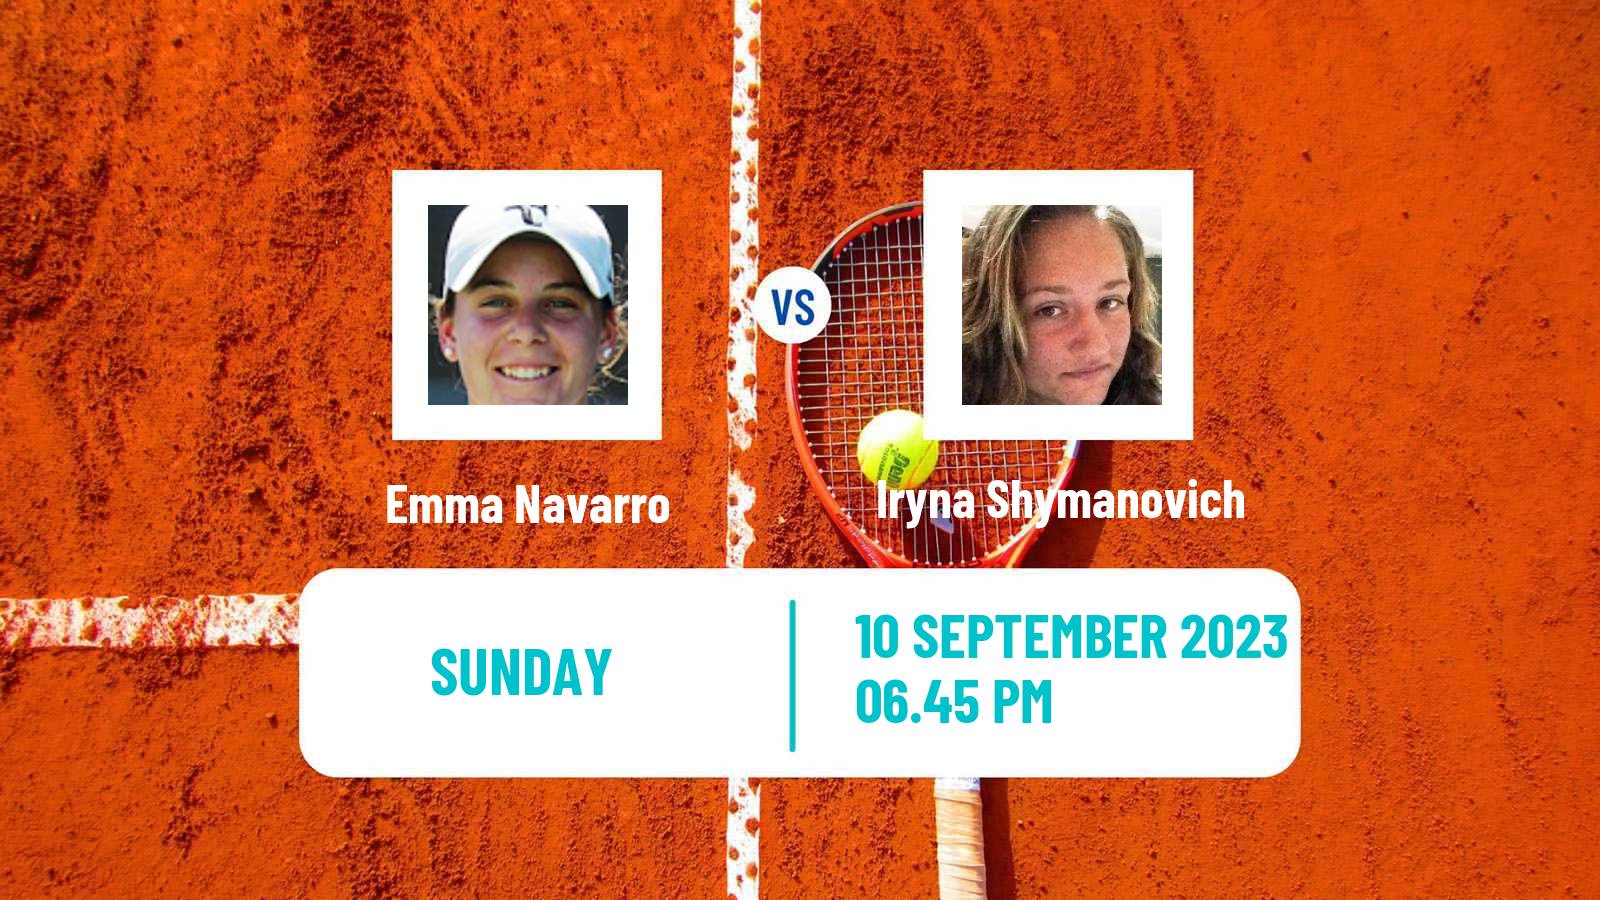 Tennis WTA San Diego Emma Navarro - Iryna Shymanovich